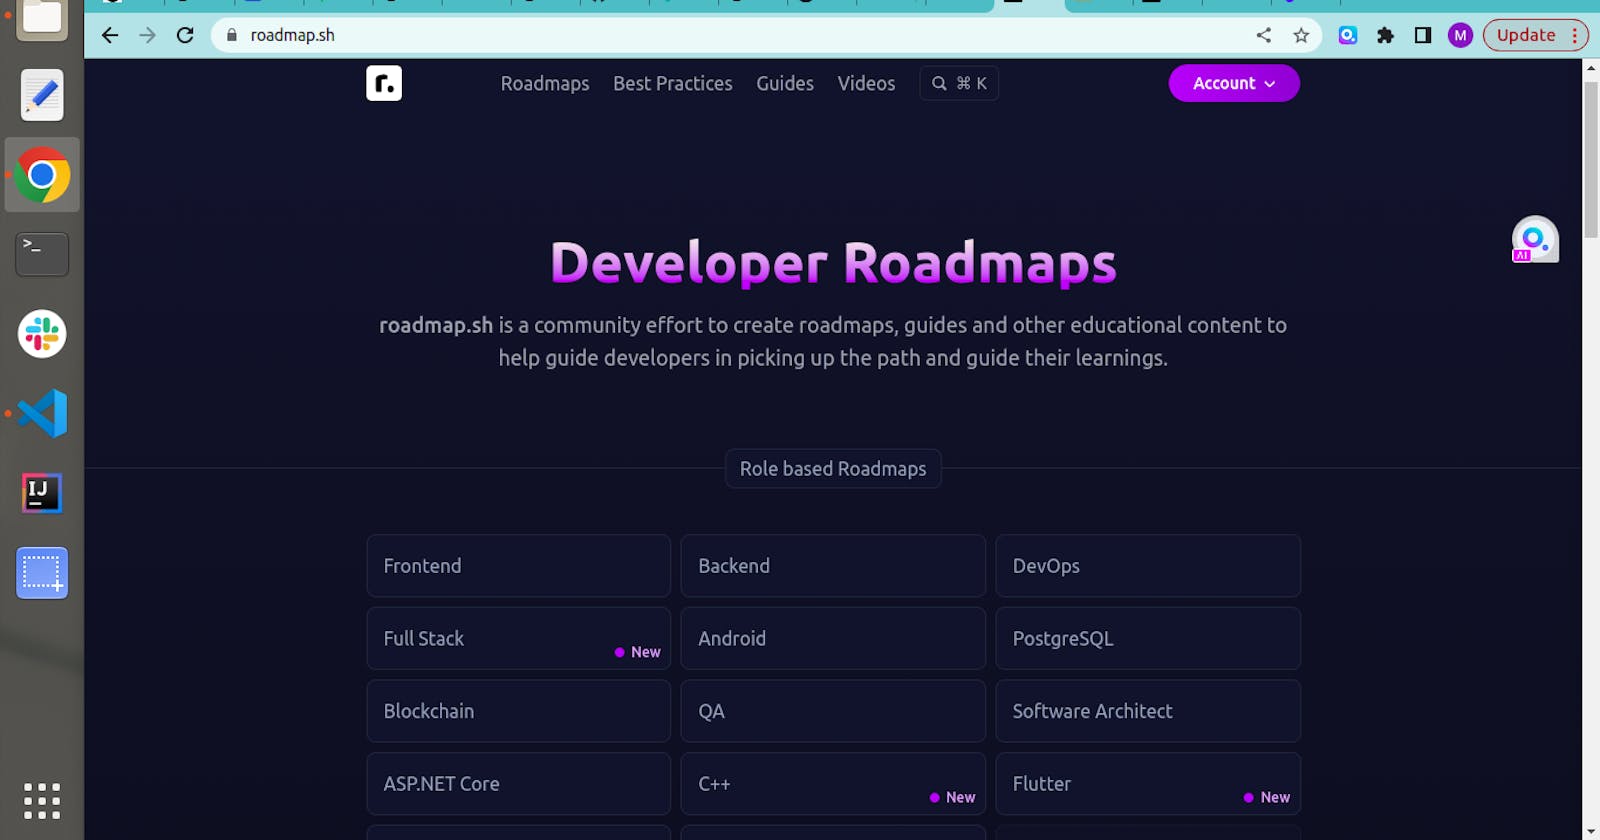 Ever heard of Roadmap.sh?